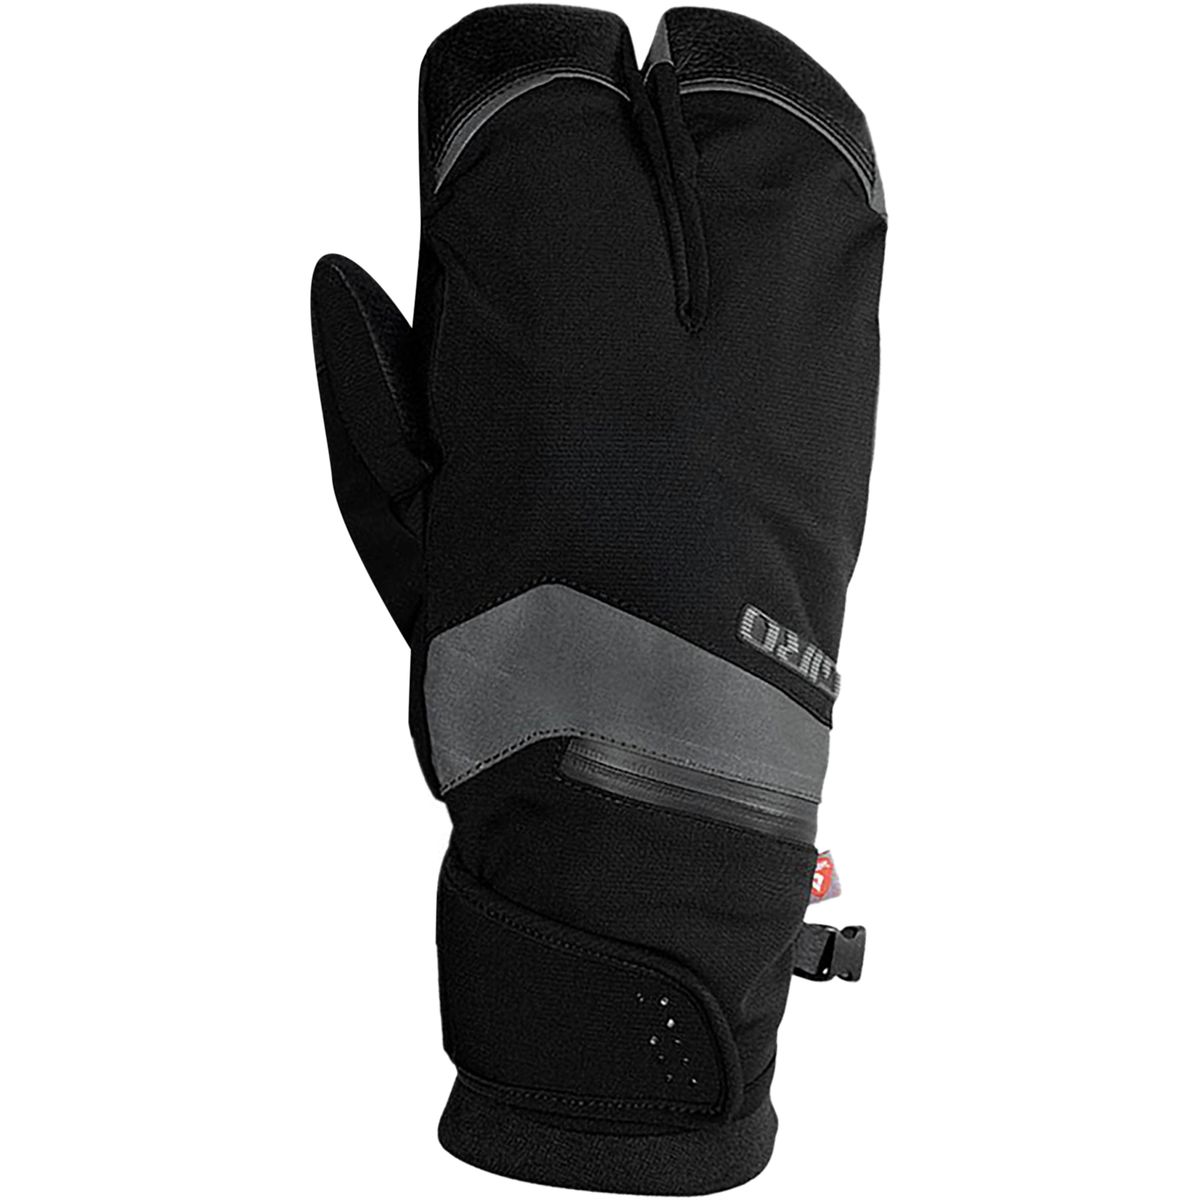 giro 100 proof gloves